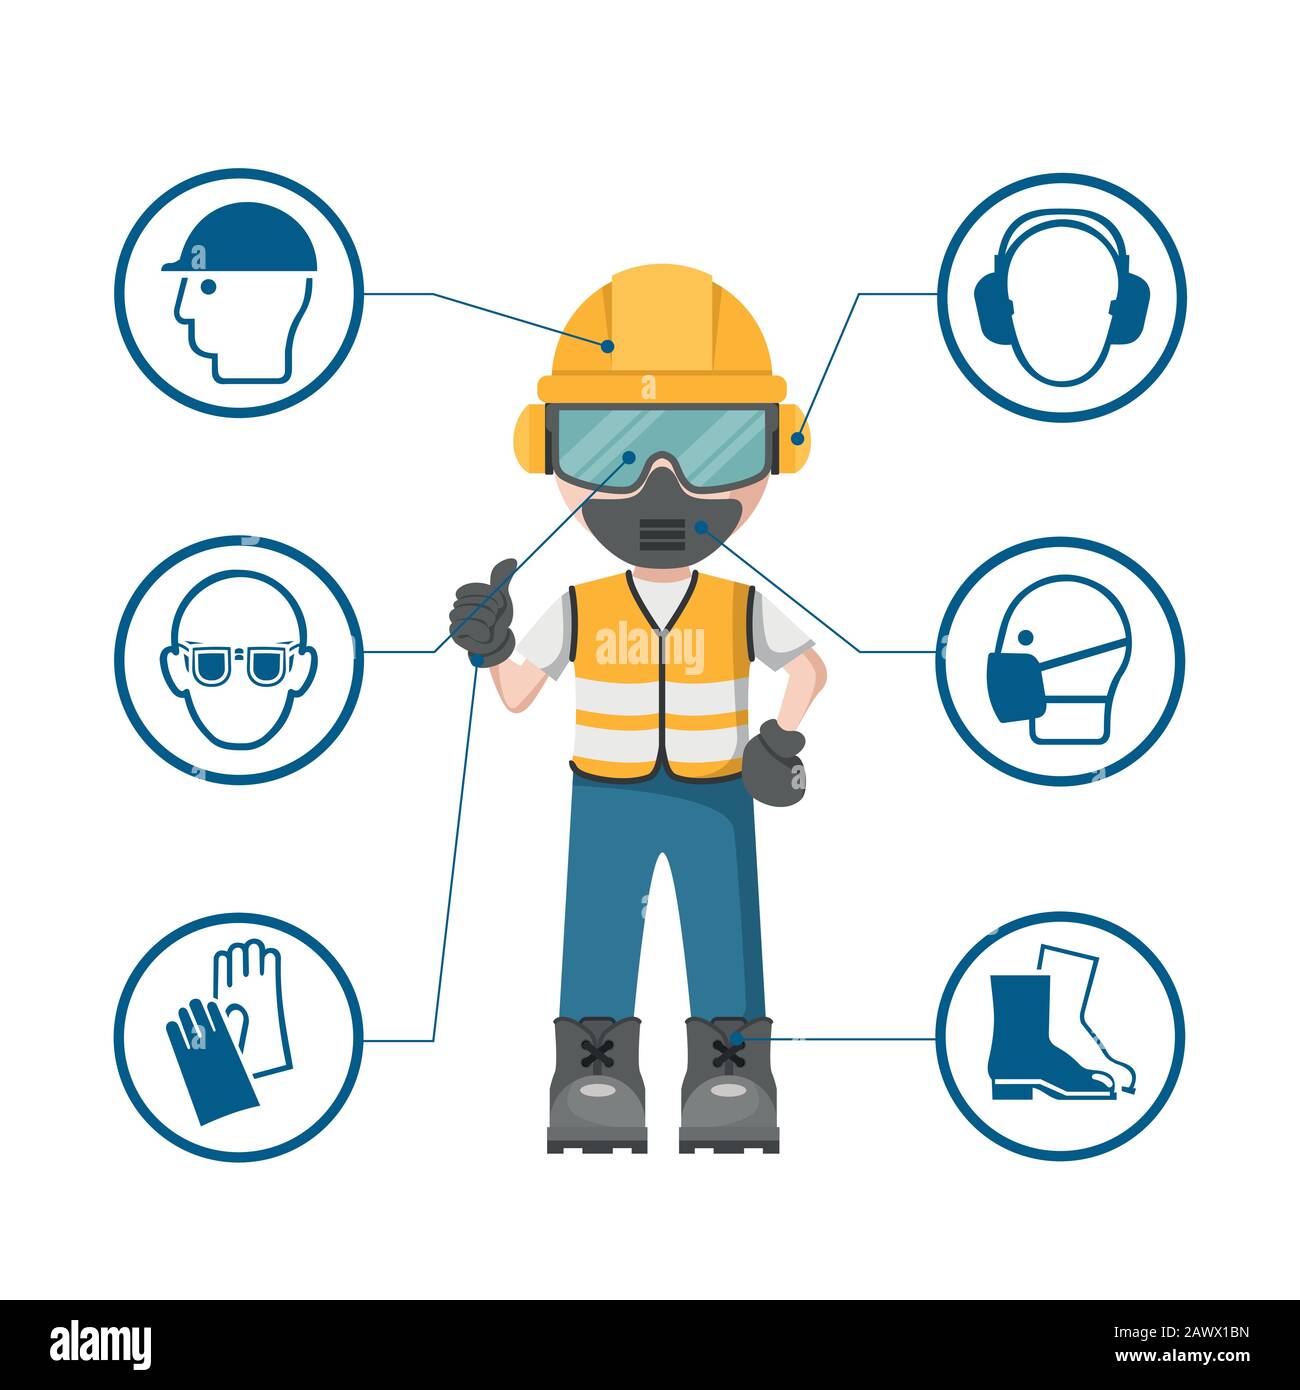 Personendesign mit Ihrer persönlichen Schutzausrüstung und Arbeitssicherheitssymbolen Stock Vektor